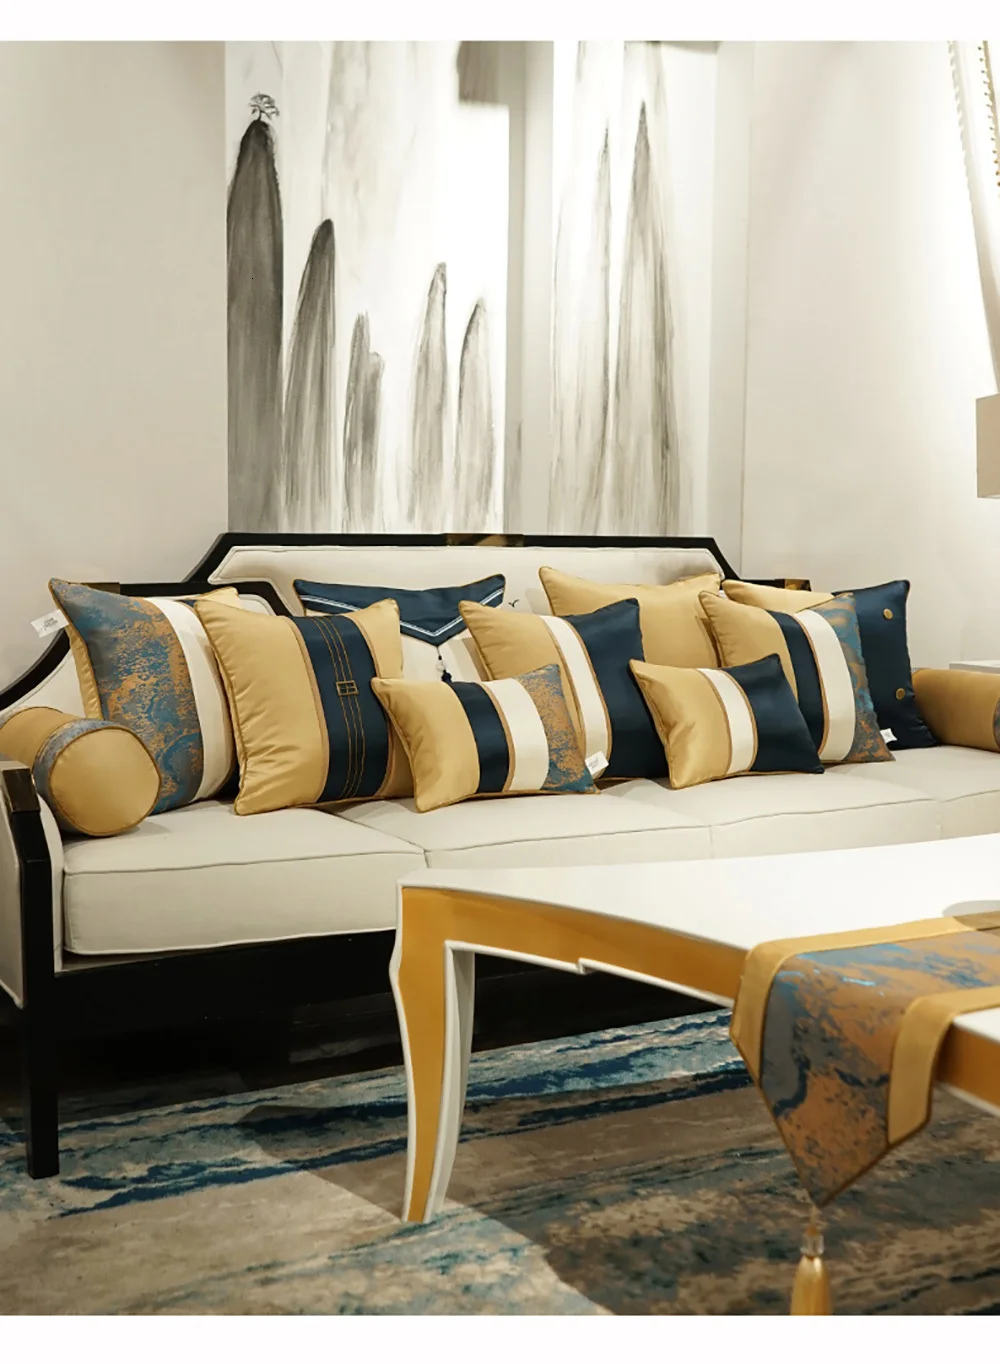 Avigers Лоскутные синие белые желтые Чехлы для подушек с кистями, наволочки для подушек, роскошные домашние декоративные Чехлы для дивана, спальни, гостиной